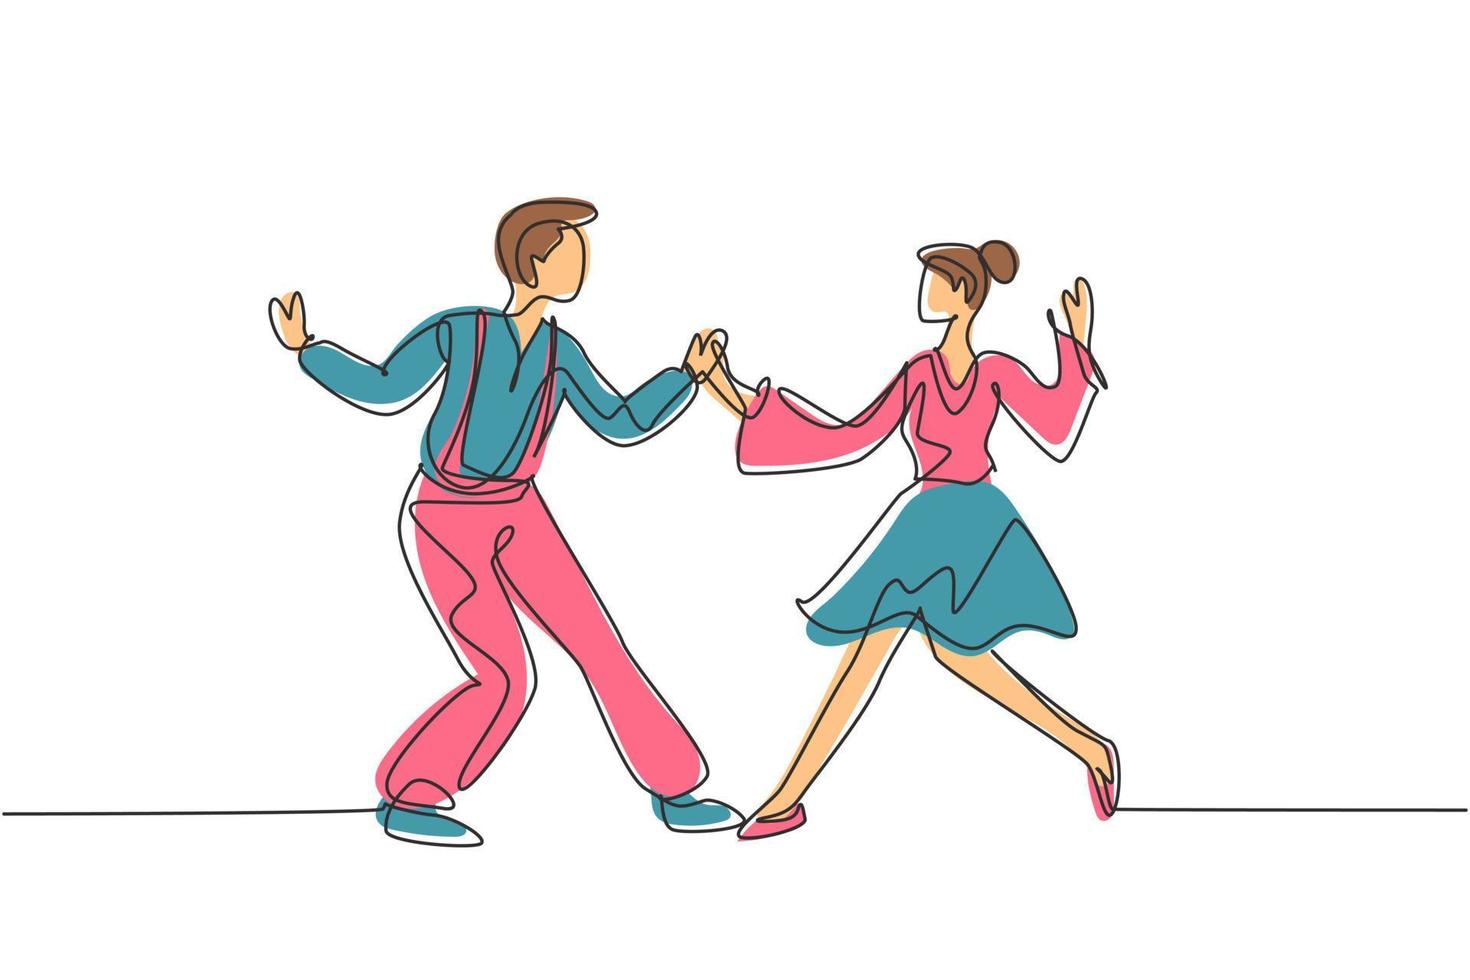 disegno continuo di una linea uomo e donna che ballano lindy hop o oscillano insieme. personaggi maschili e femminili che eseguono danza a scuola o a una festa. illustrazione grafica vettoriale di disegno di disegno a linea singola